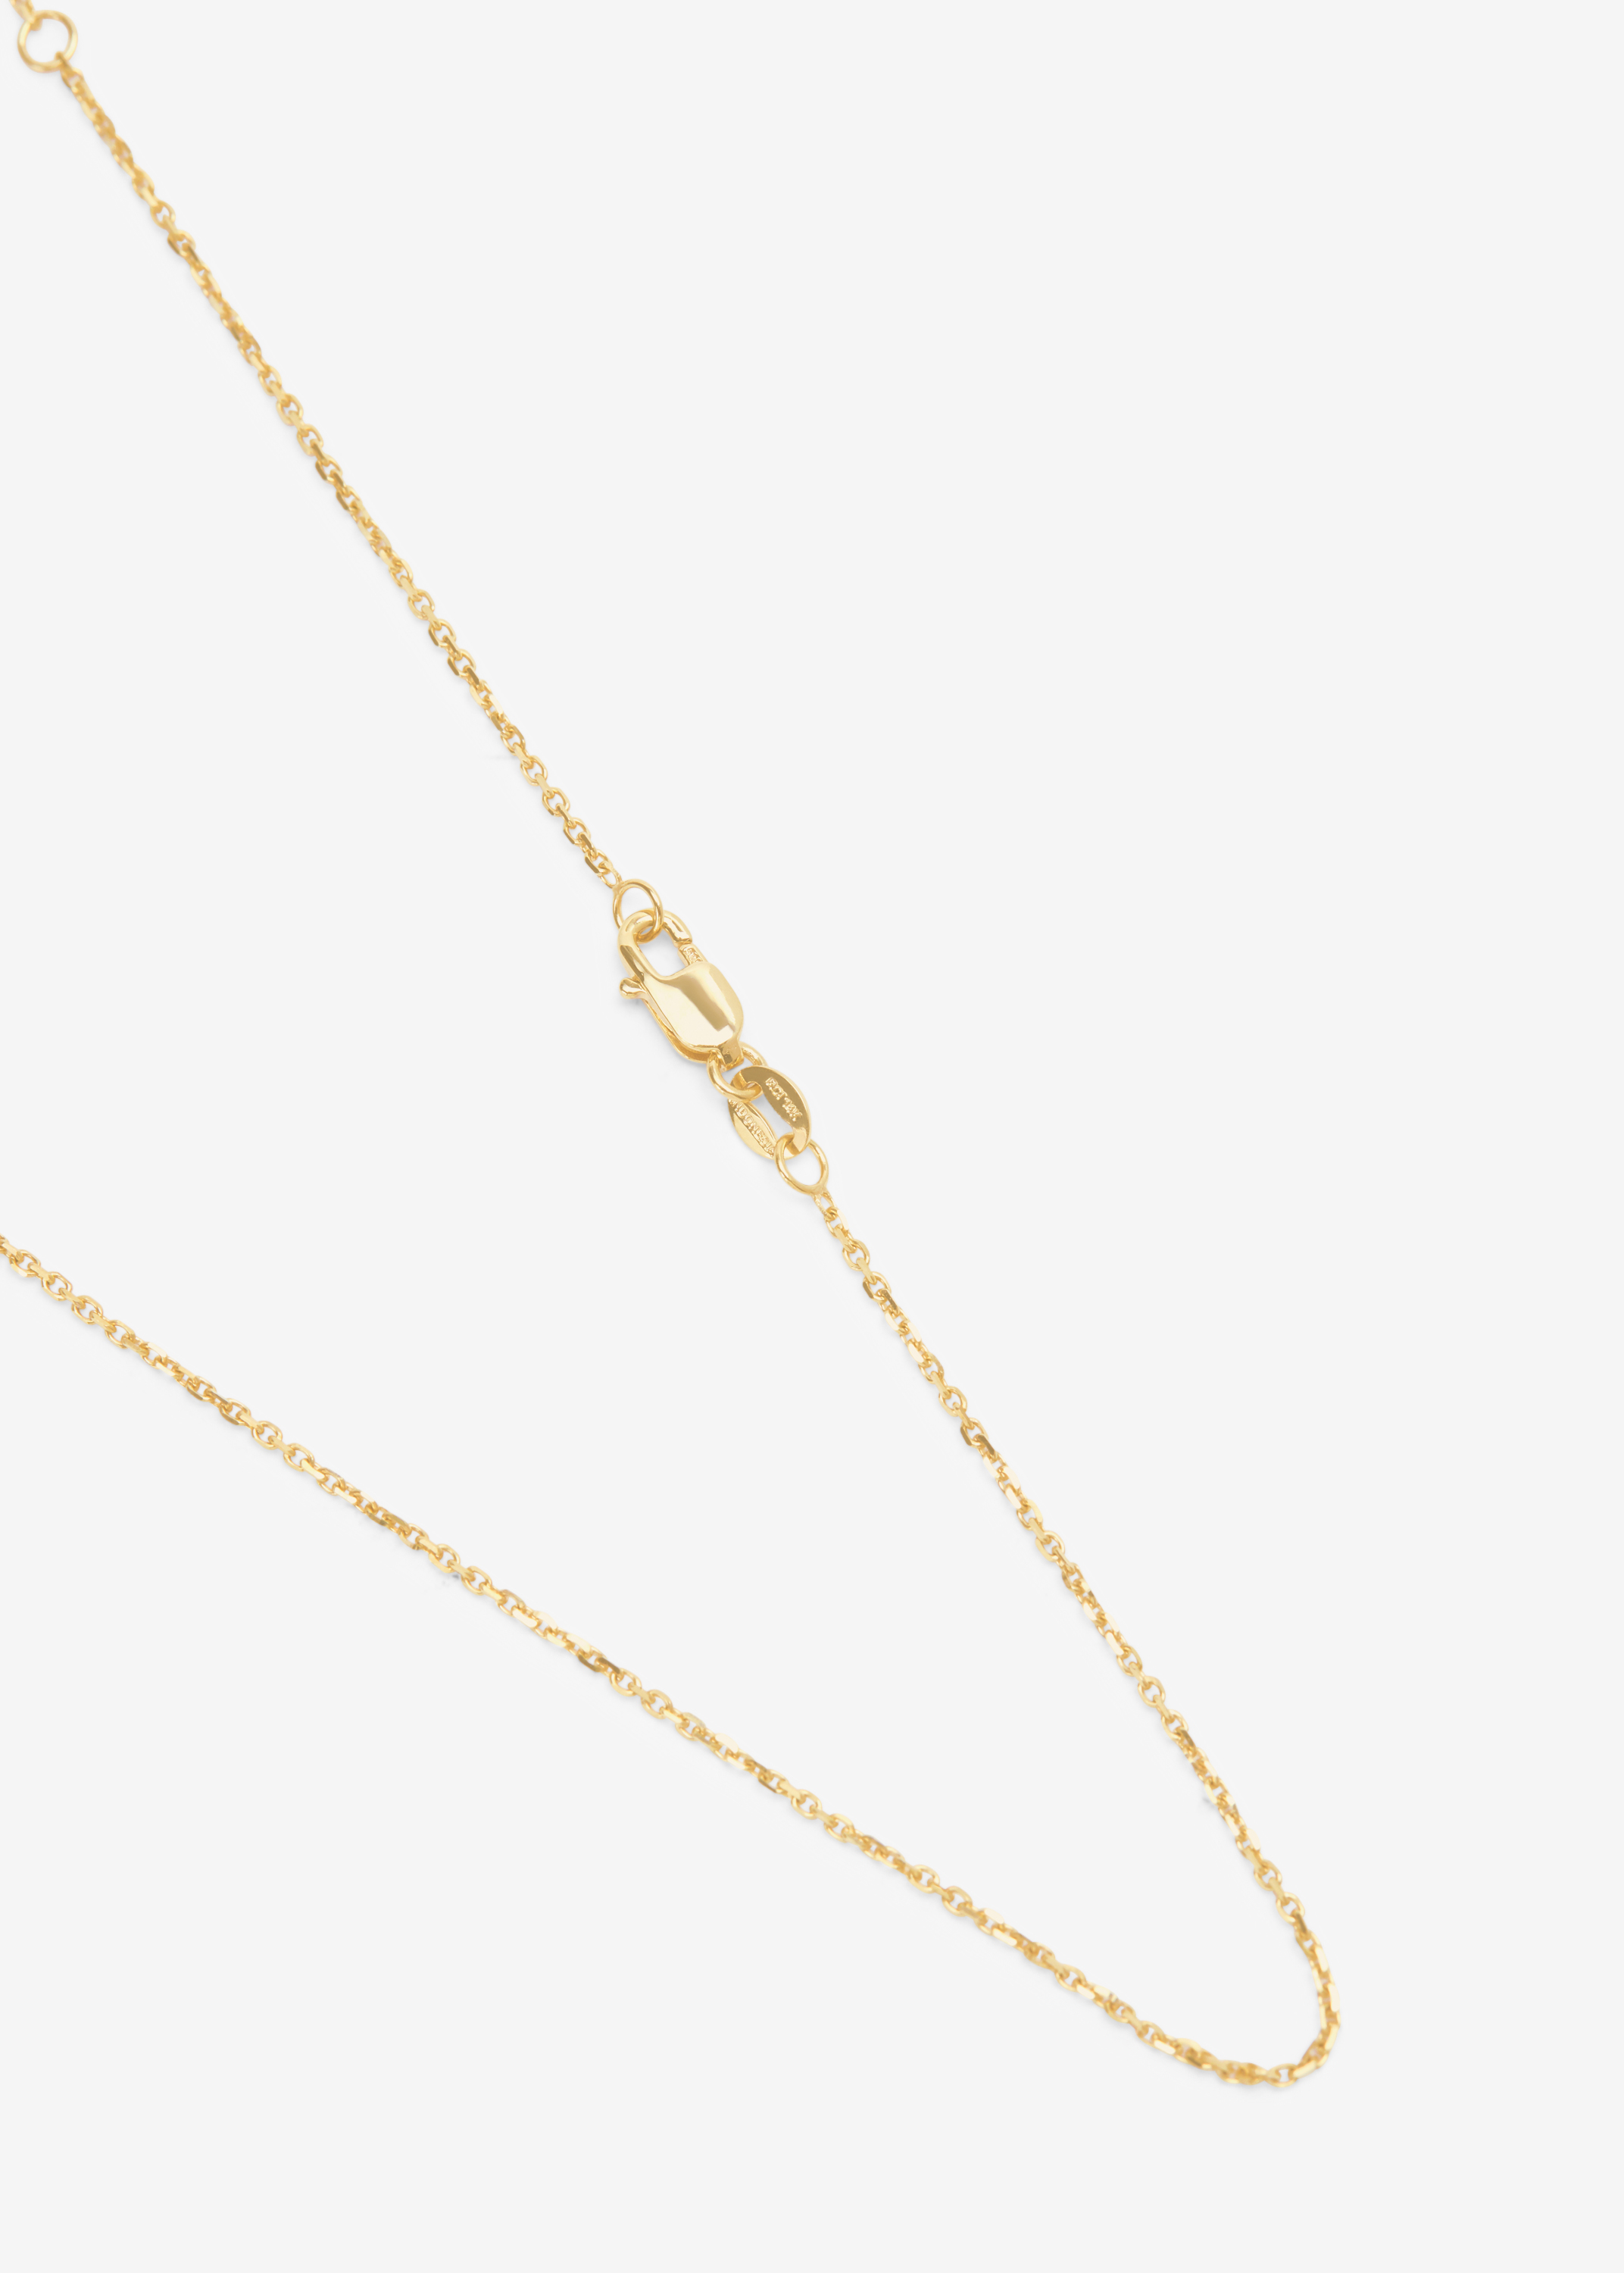 สร้อยคอโซ่ทองคำแท้เคเบิ้ลปรับความยาวได้ 14K ขนาด 1.1 มม  14K Yellow Gold Cable Adjustable Chain Necklace Length Size  1.1mm